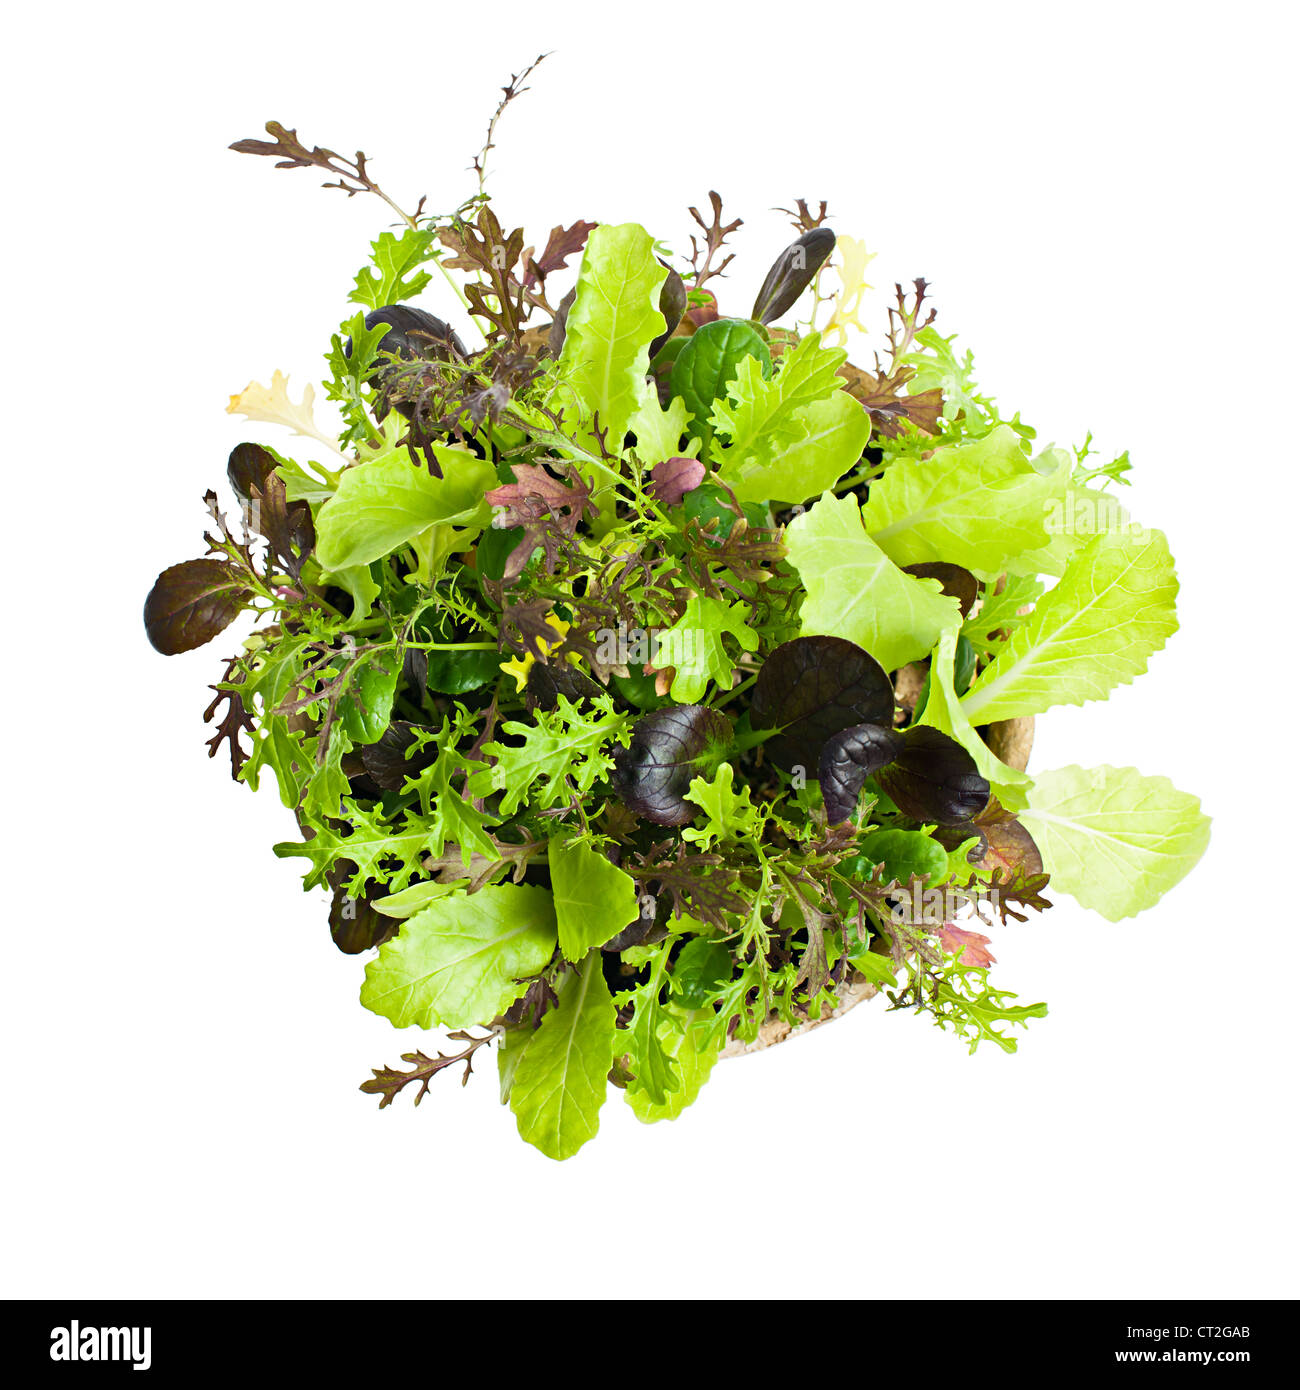 Las plántulas en macetas de jardín y la ensalada de lechuga verdes desde arriba Foto de stock